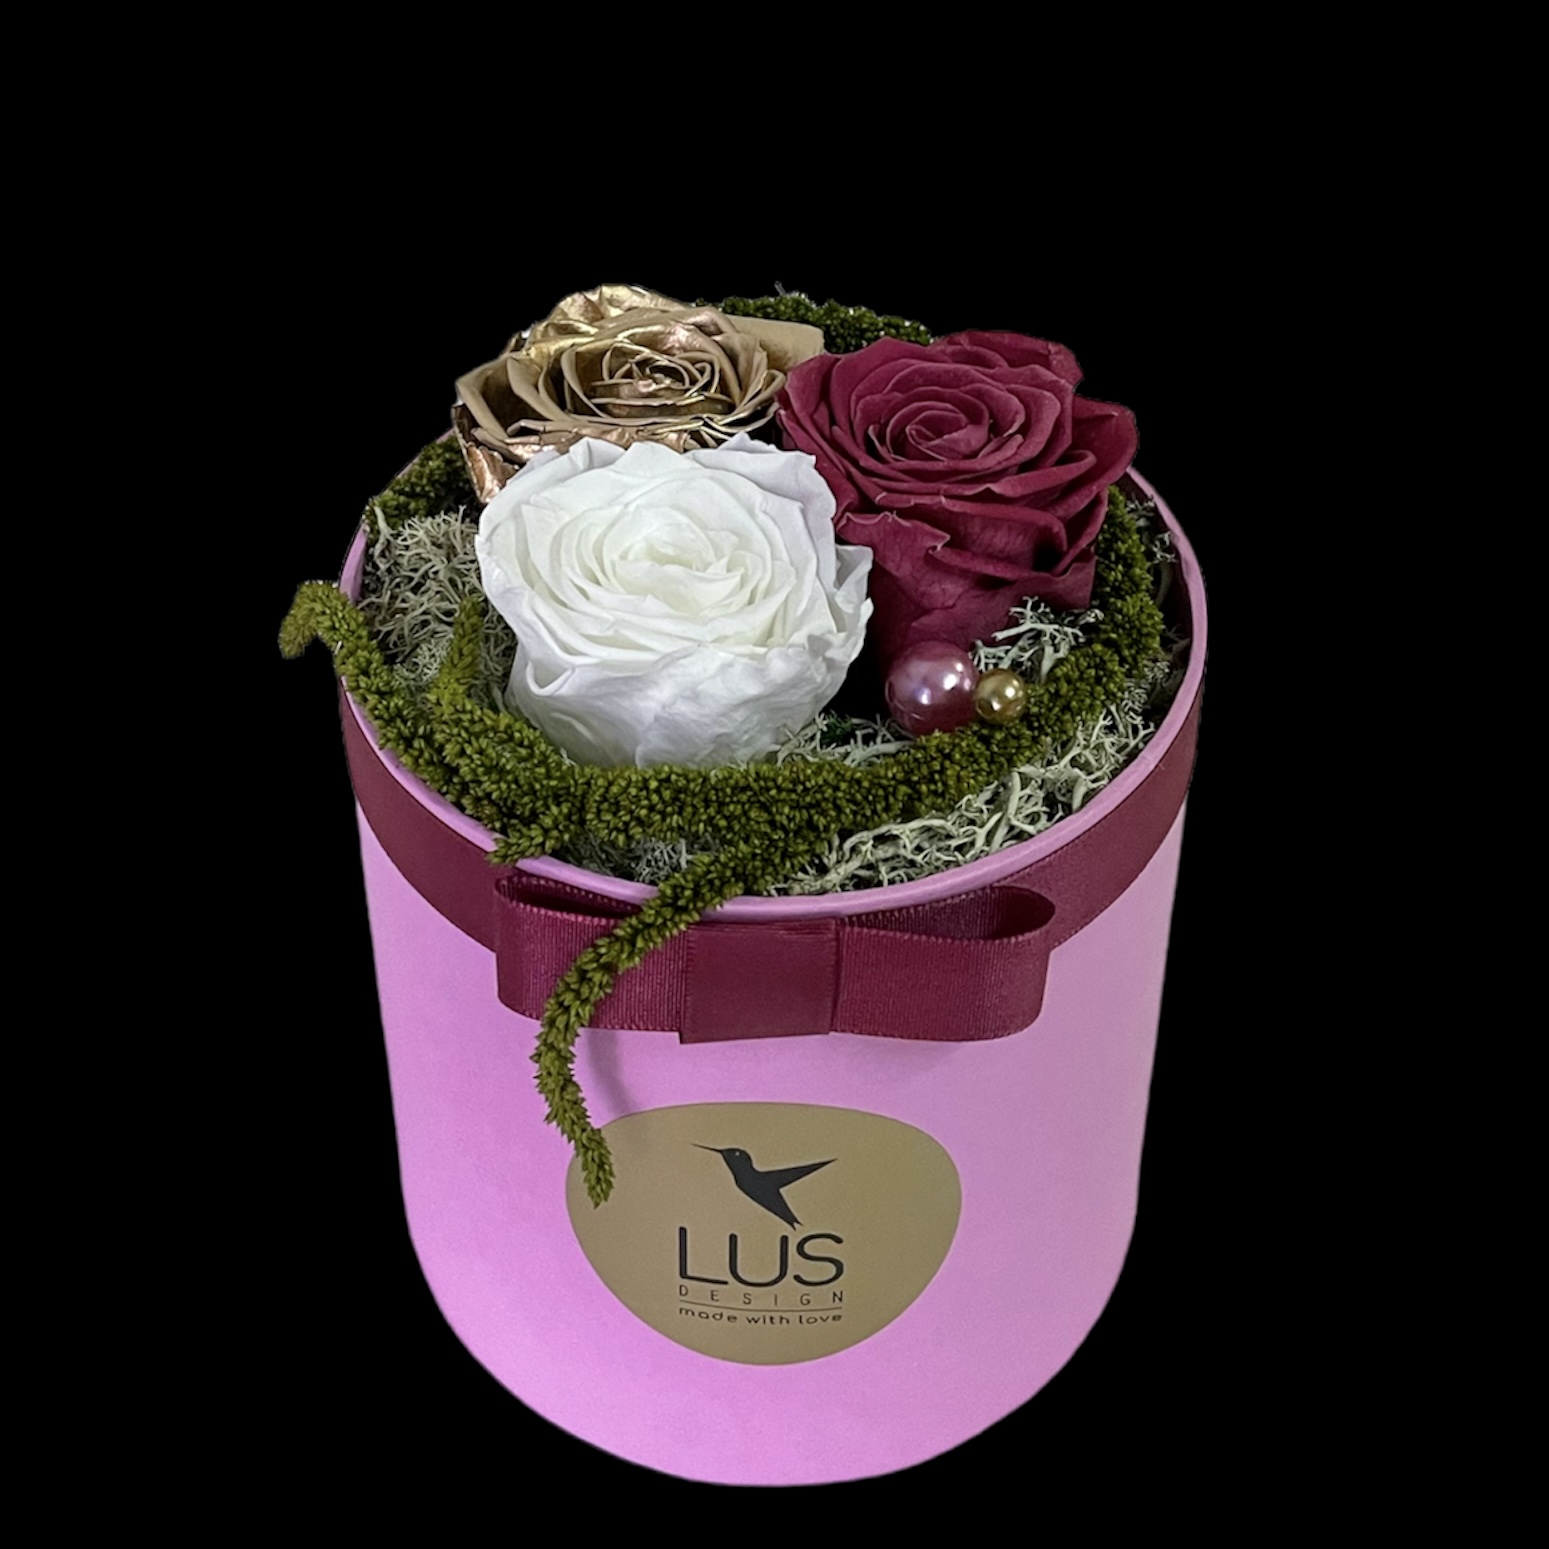 Trvácna kvetinová dekorácia vo fialovom flower boxe